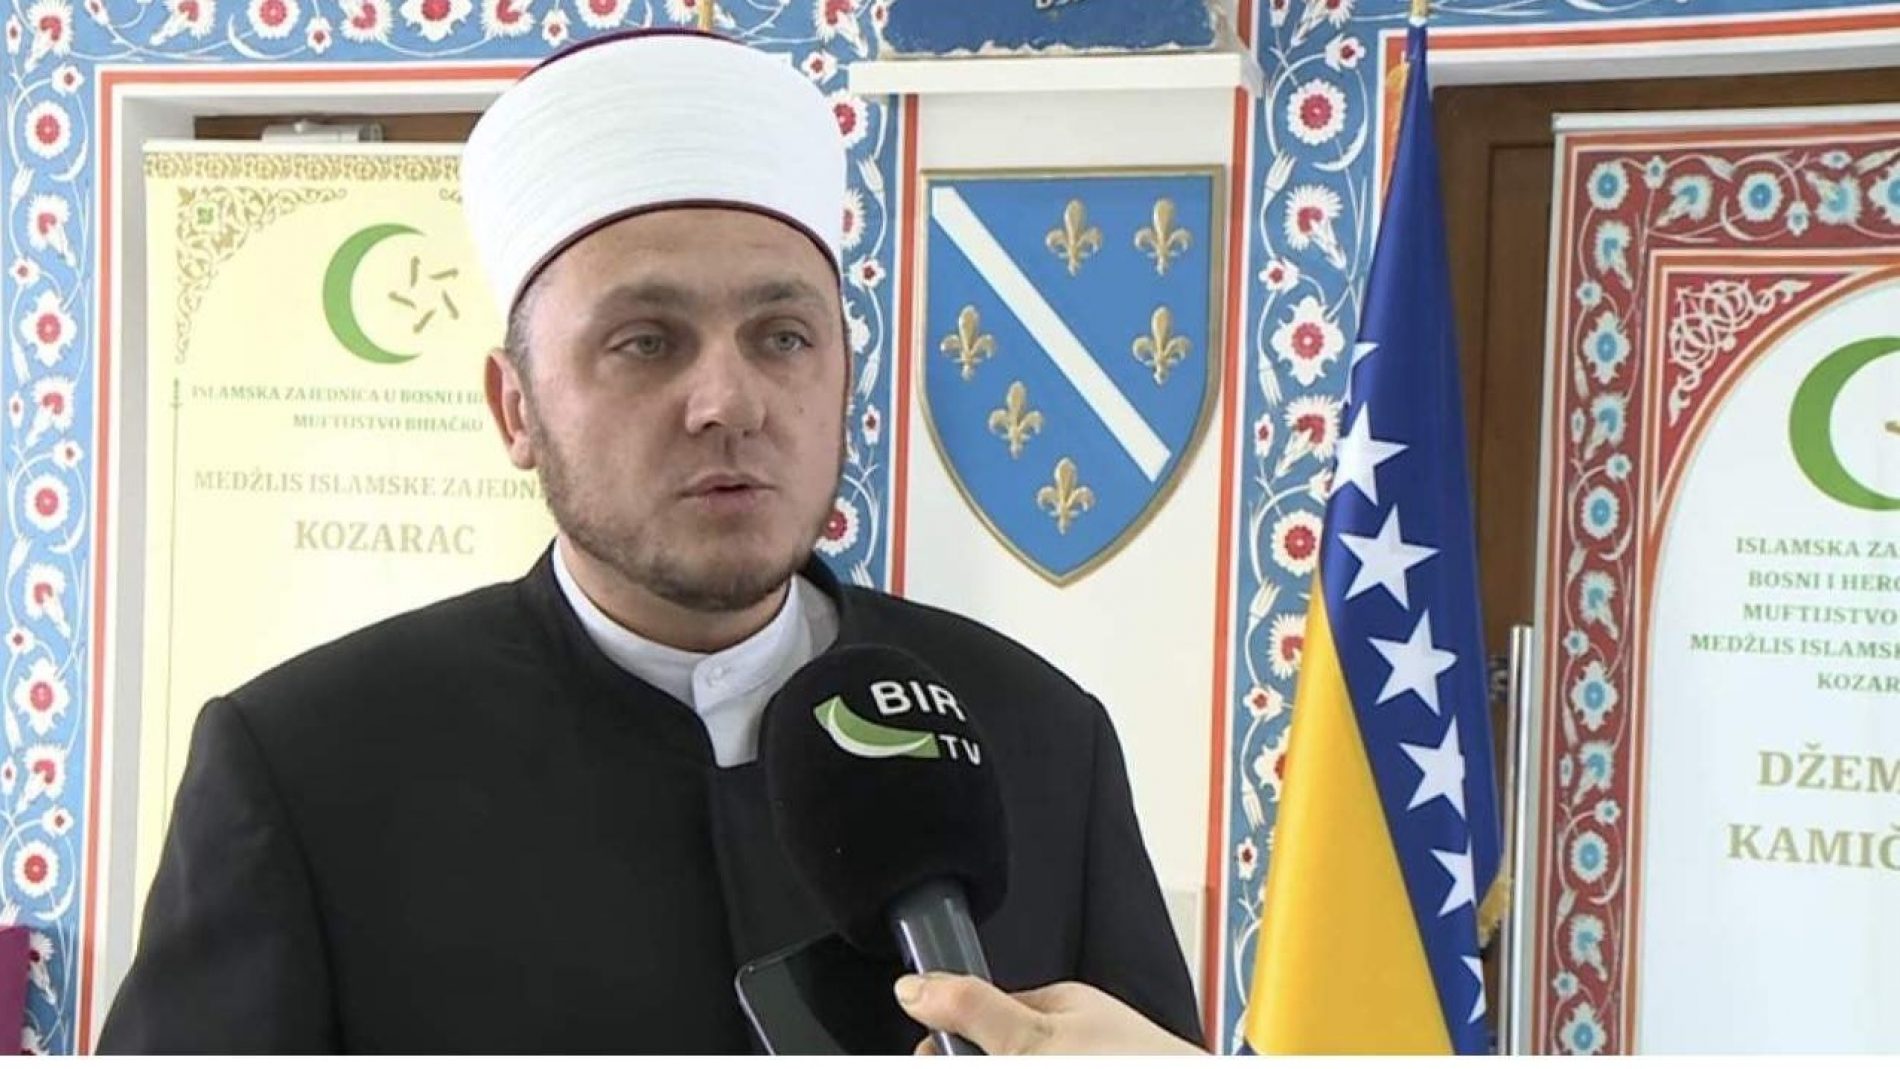 Reisul-ulema: Dok se ponovo vrši progon vjerskog službenika, bošnjački intelektualci šute. Da li se boje Milorada Dodika?